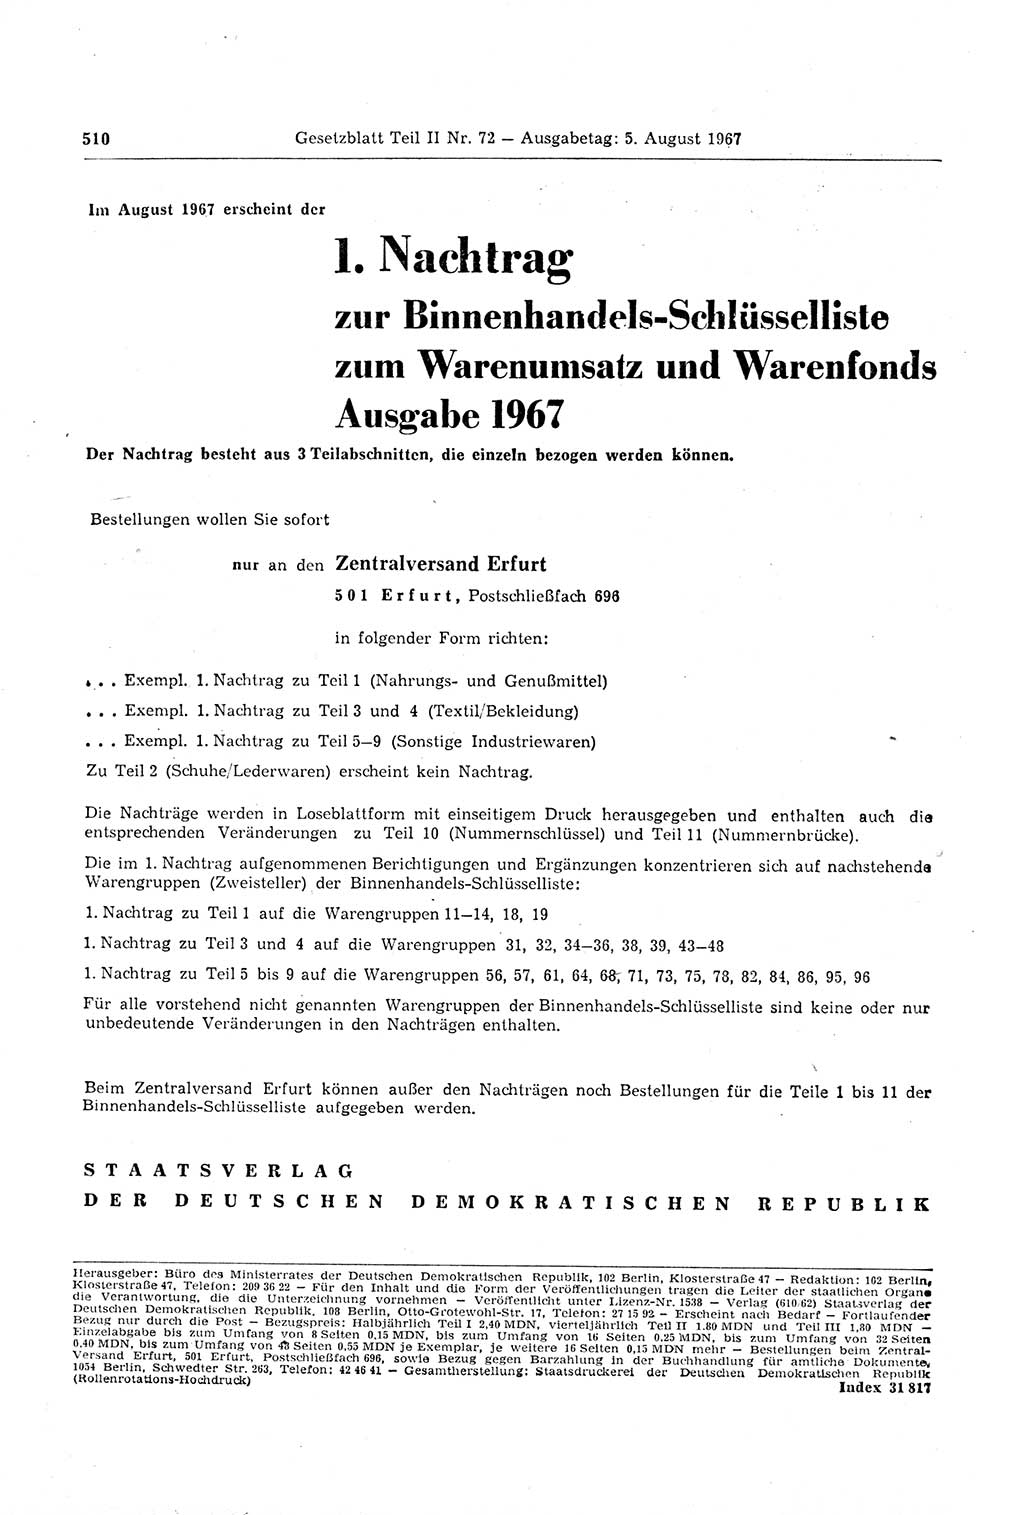 Gesetzblatt (GBl.) der Deutschen Demokratischen Republik (DDR) Teil ⅠⅠ 1967, Seite 510 (GBl. DDR ⅠⅠ 1967, S. 510)